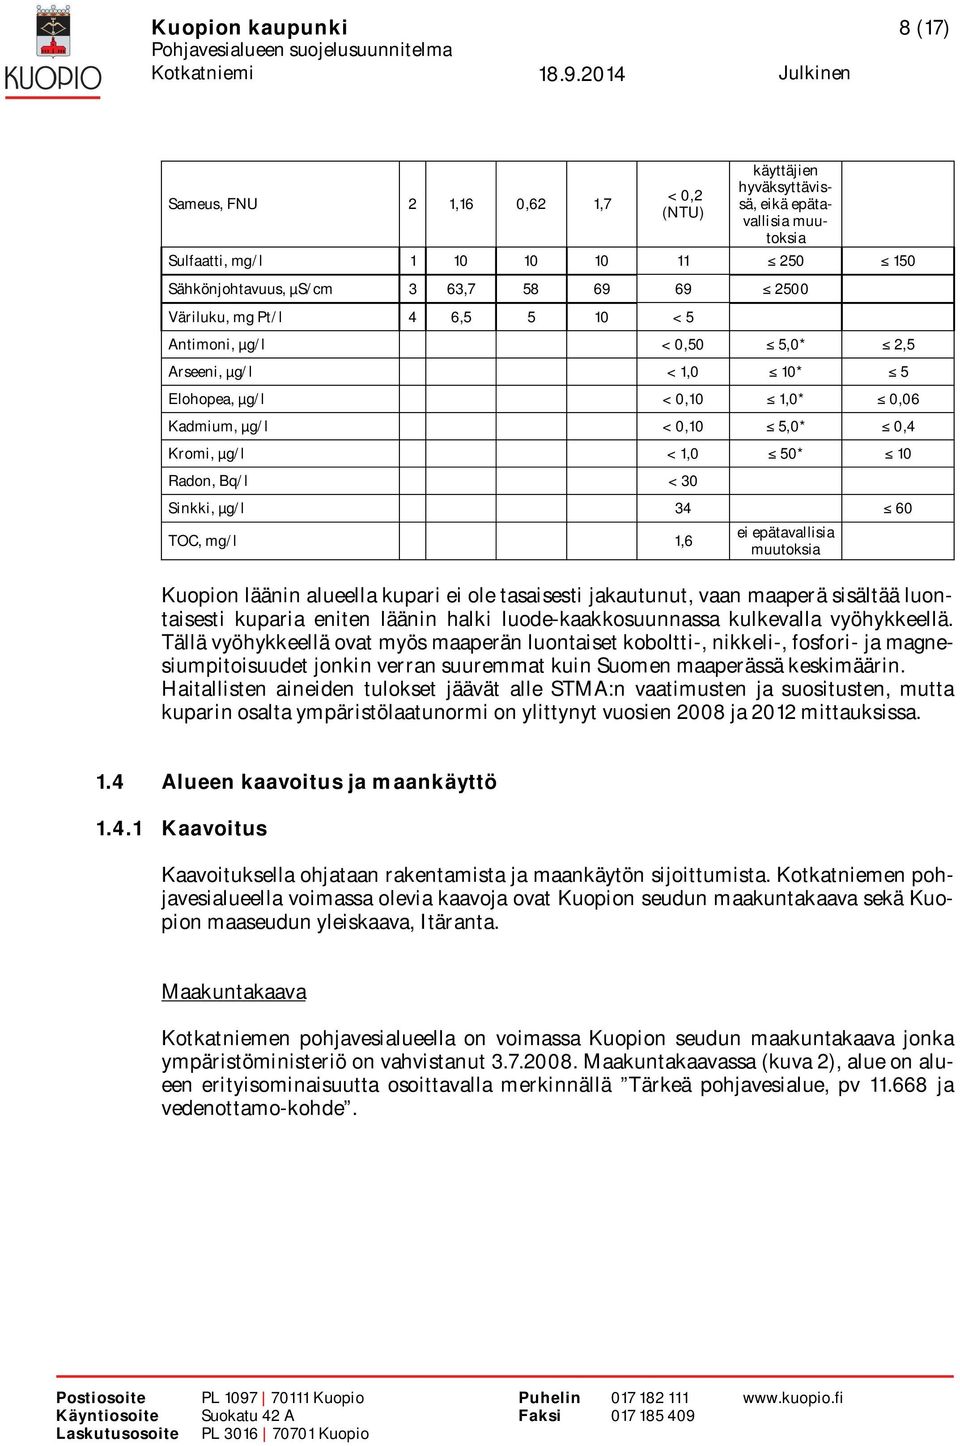 Sinkki, µg/l 34 60 TOC, mg/l 1,6 ei epätavallisia muutoksia Kuopion läänin alueella kupari ei ole tasaisesti jakautunut, vaan maaperä sisältää luontaisesti kuparia eniten läänin halki